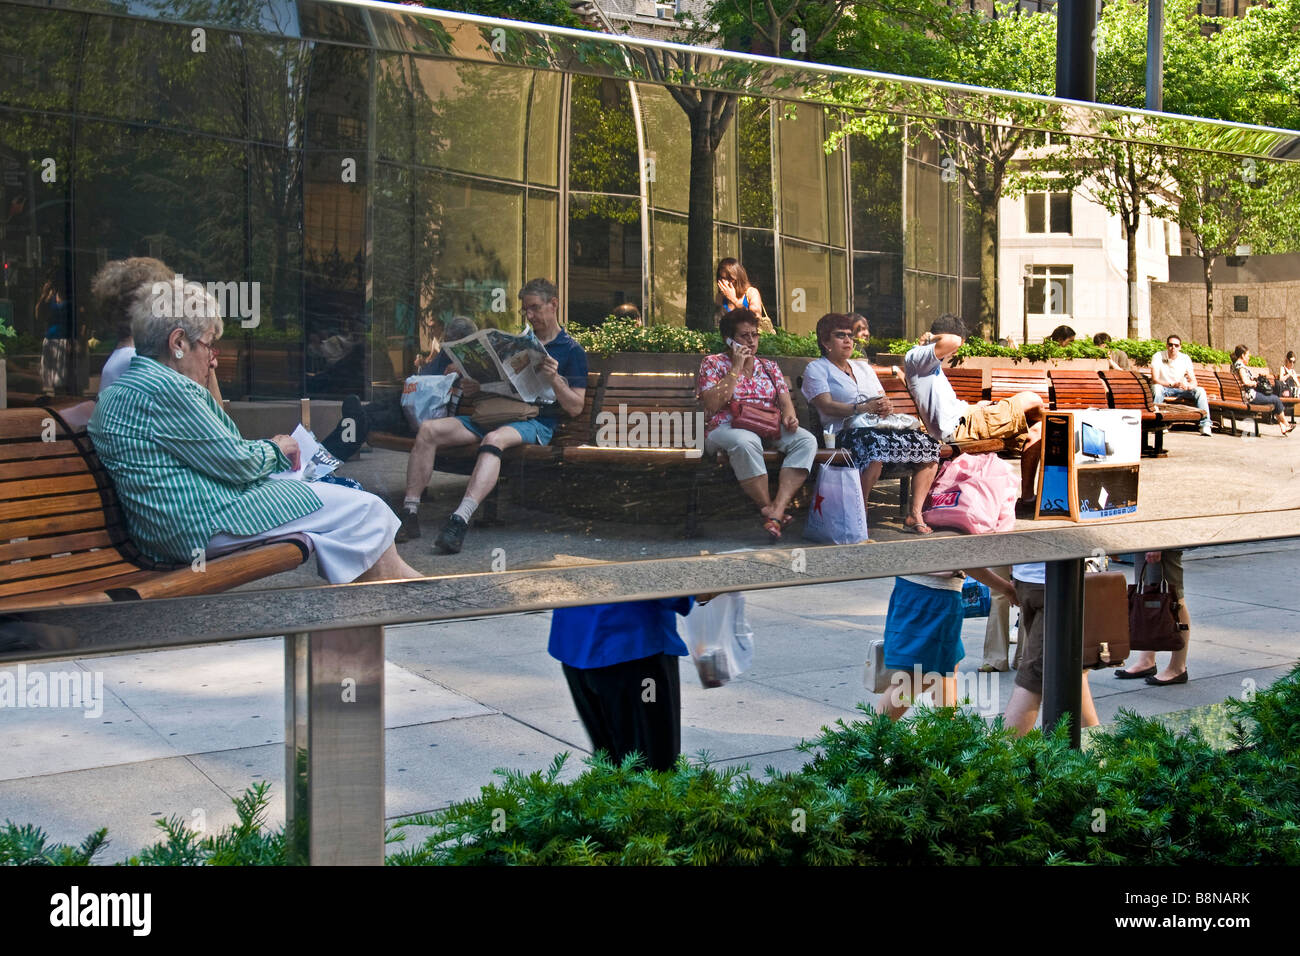 Escena urbana con personas sentadas en los banquillos Foto de stock